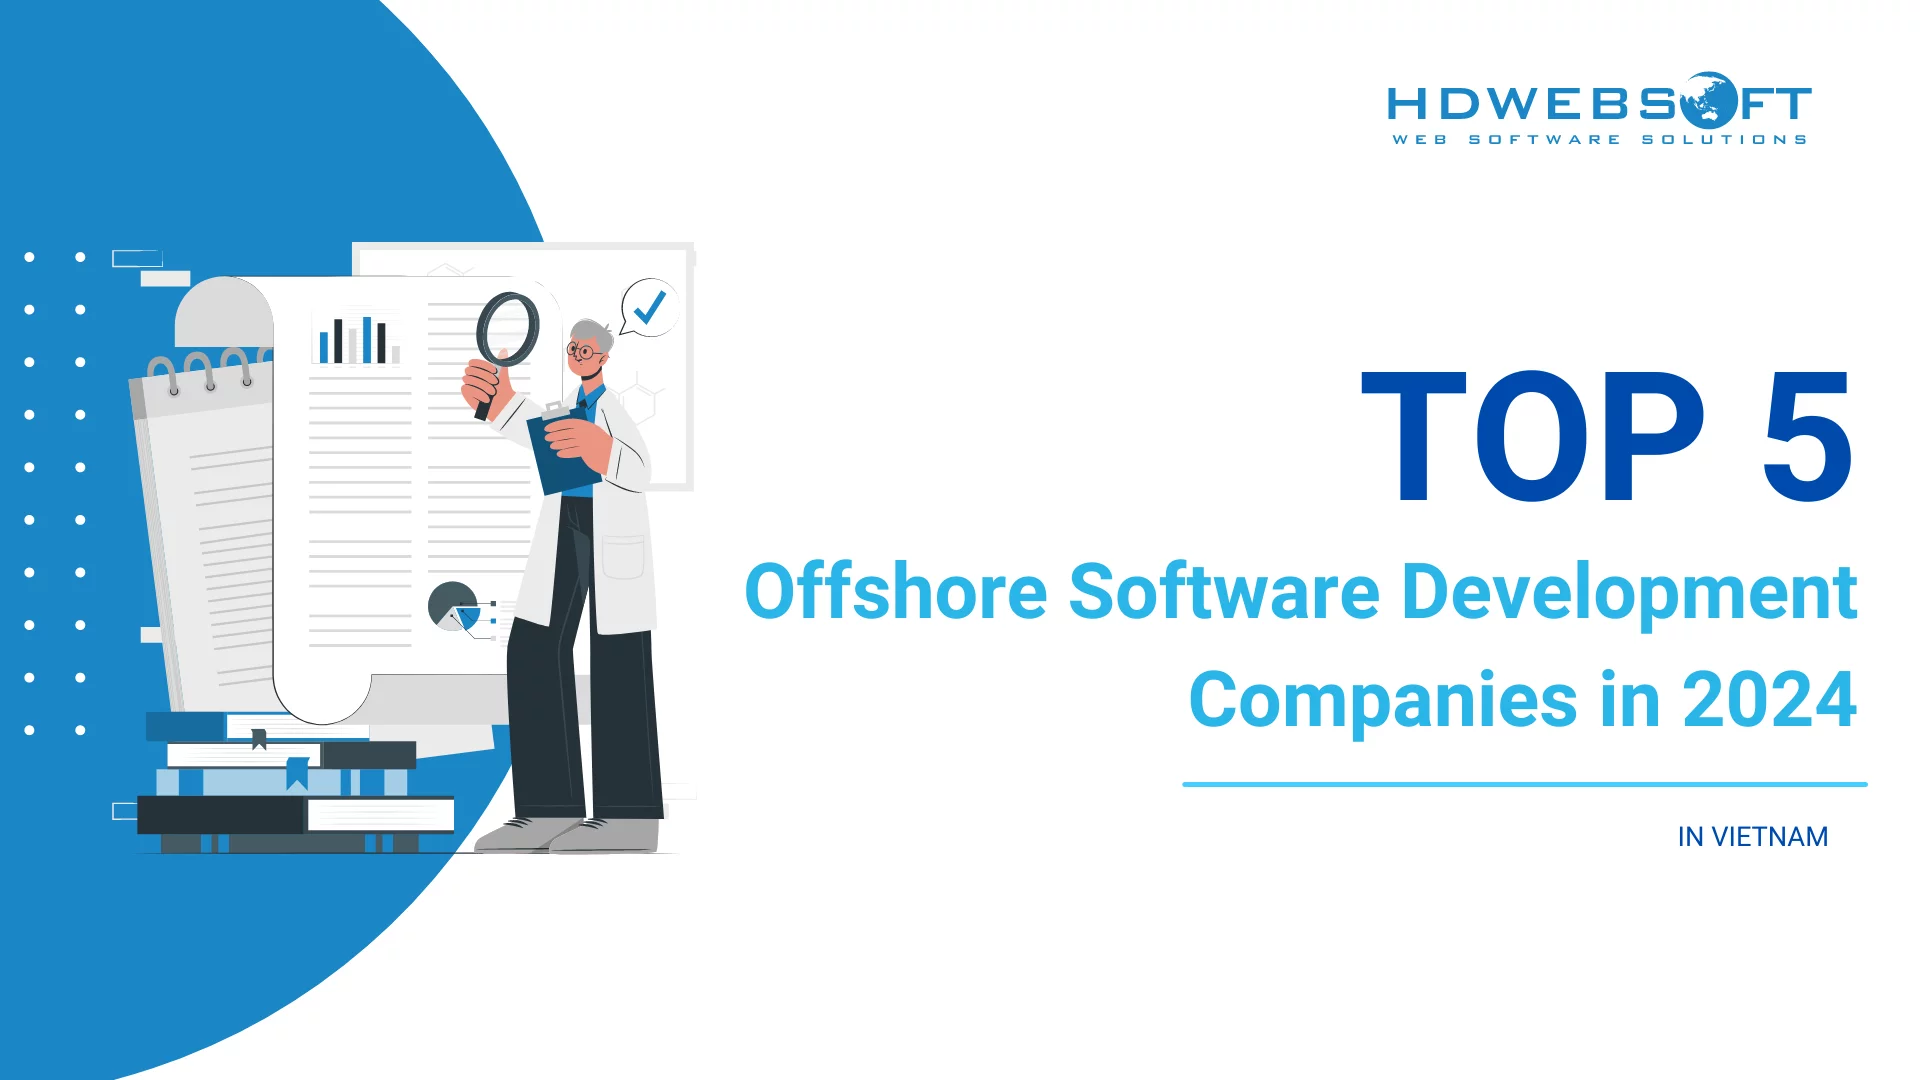 Top 5 Offshore Software Development Companies in Vietnam 2024